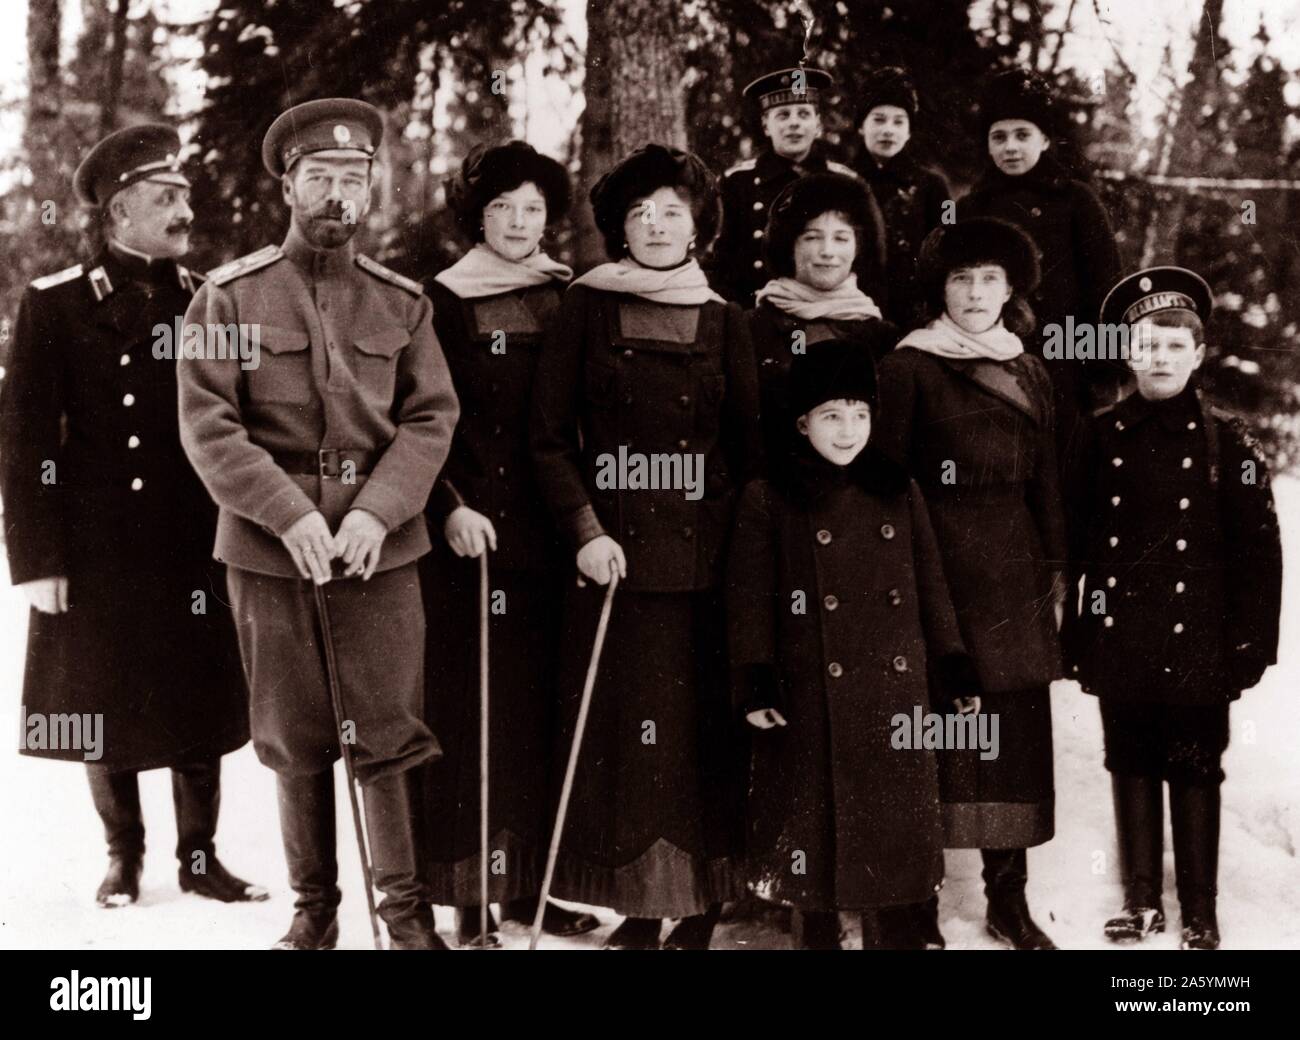 Photographie du tsar Nicolas II de la famille royale russe. autour de l'époque de son abdication en mars 1917. L'image montre les Romanov était à l'extérieur à Tsarskoïe Selo, en Russie. Photographié circa 1916-1917. Banque D'Images